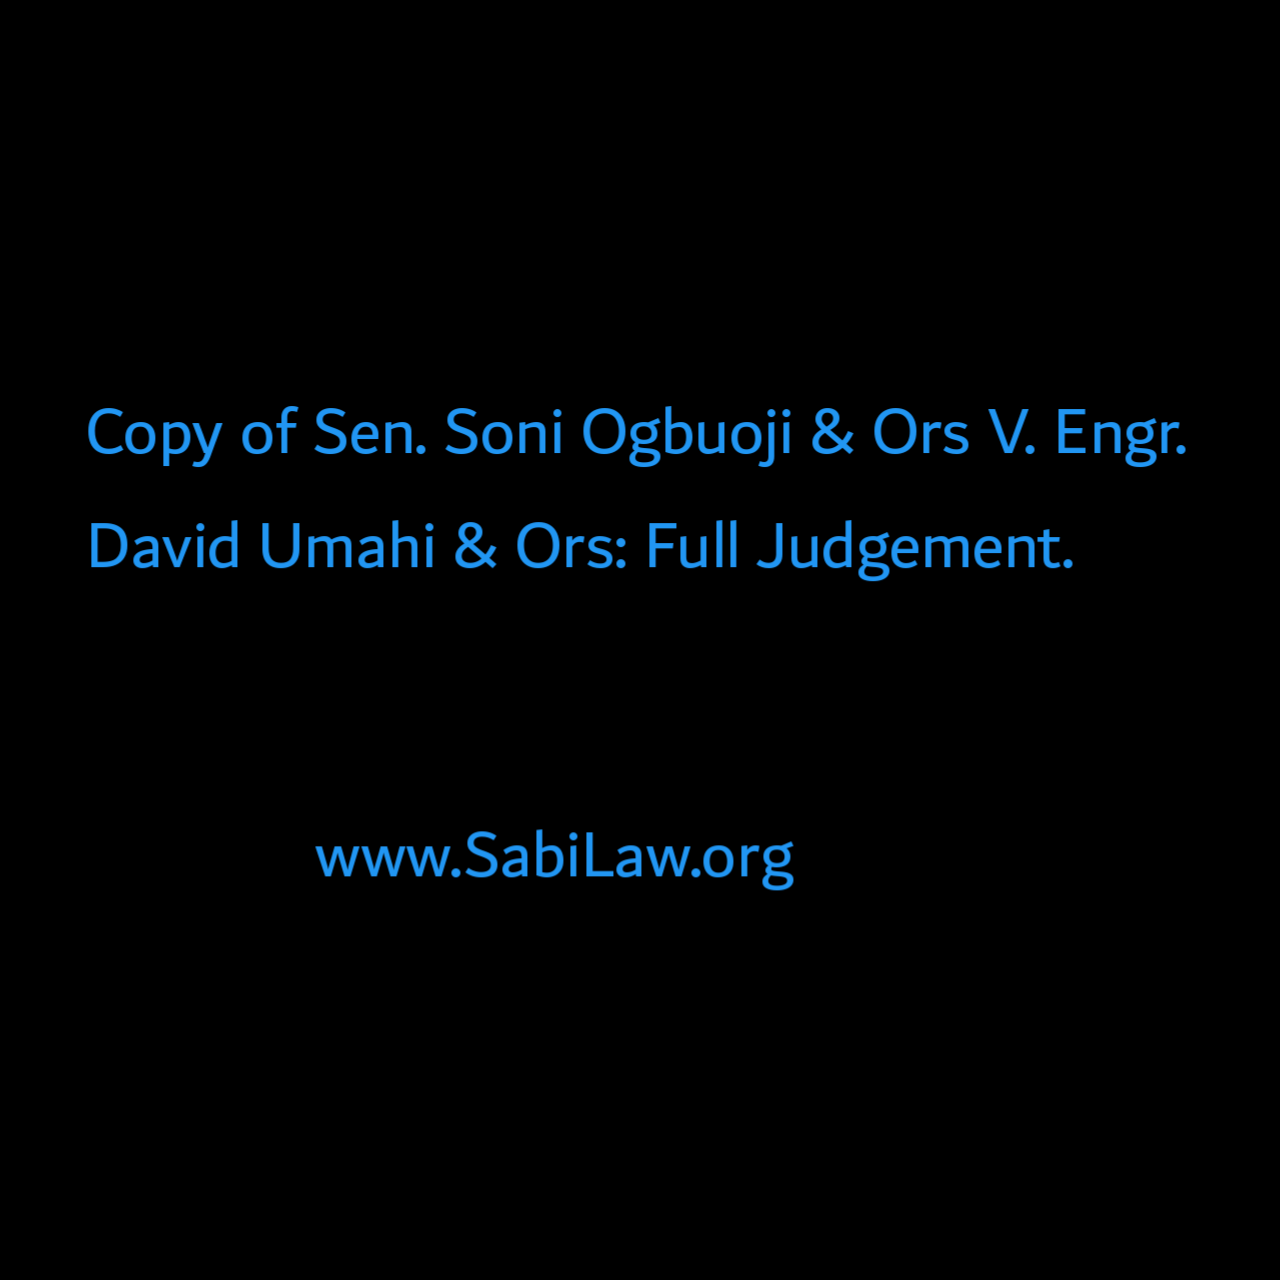 Copy of Sen. Soni Ogbuoji & Ors V. Engr. David Umahi & Ors: Full Judgement